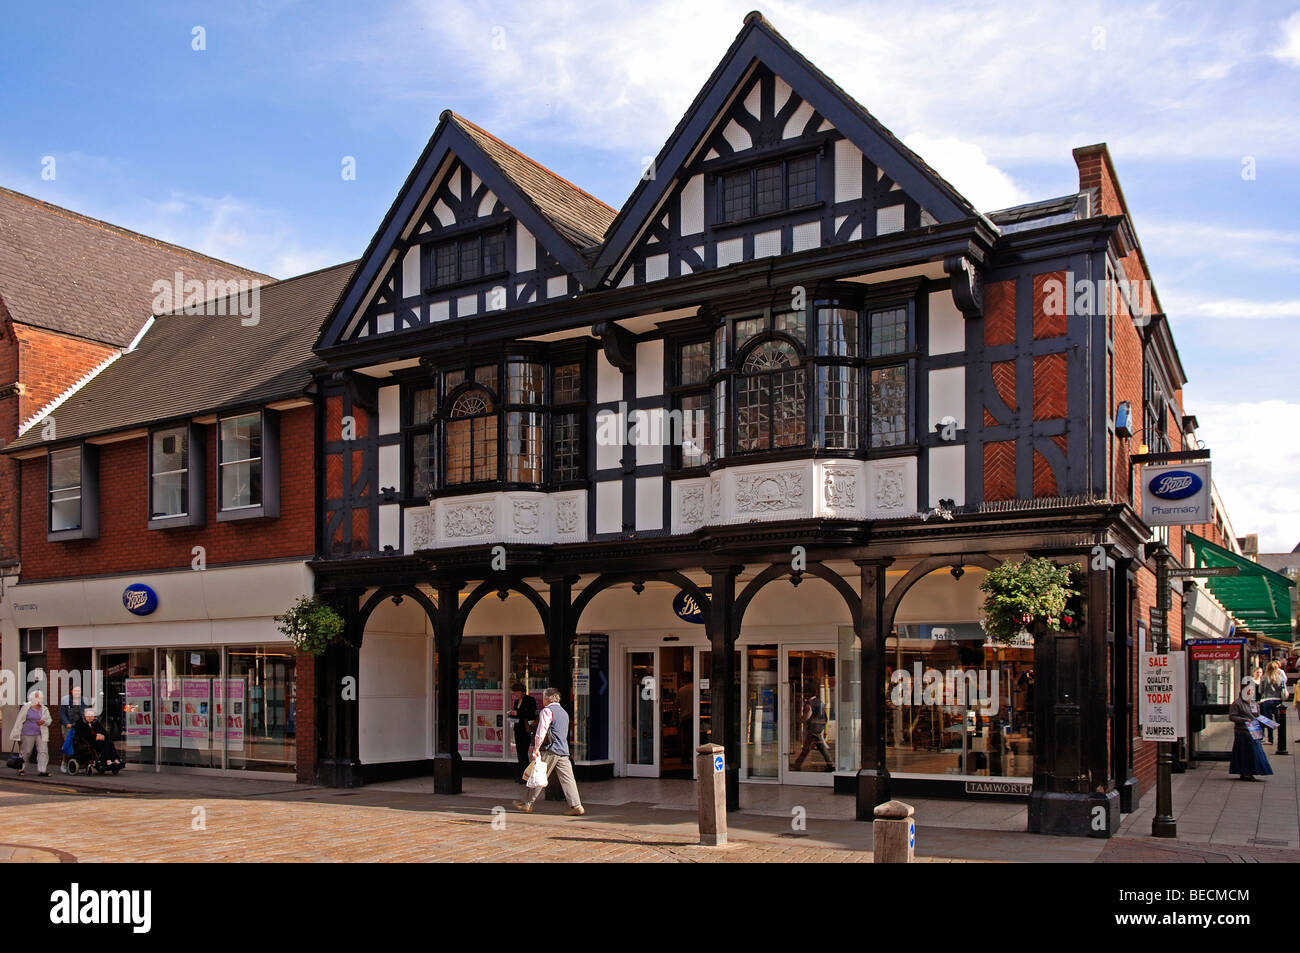 Le vieil anglais avec des maisons à colombages de style Tudor, pharmacie, Lichfield, Angleterre, Europe Banque D'Images